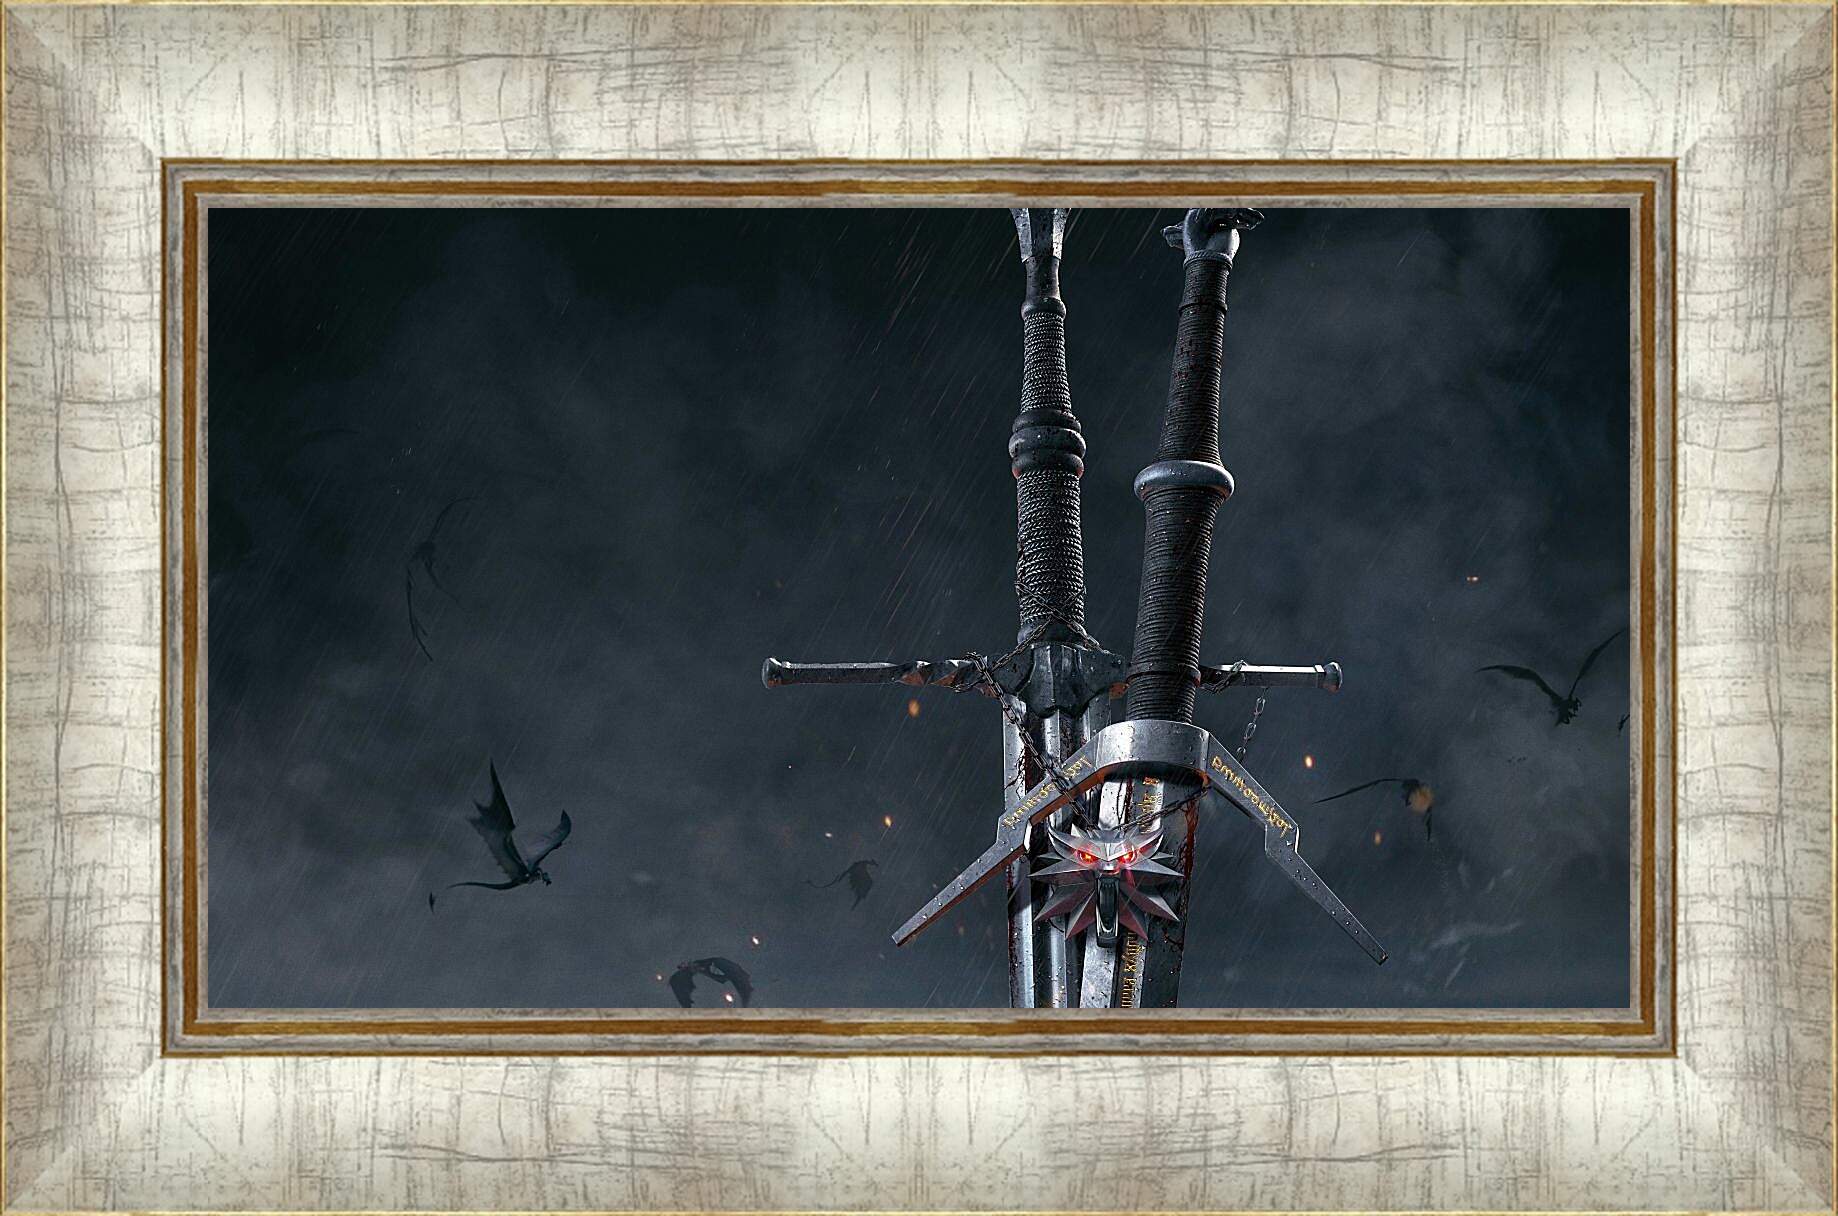 Картина в раме - The Witcher (Ведьмак), стальной и серебряный мечи Геральта